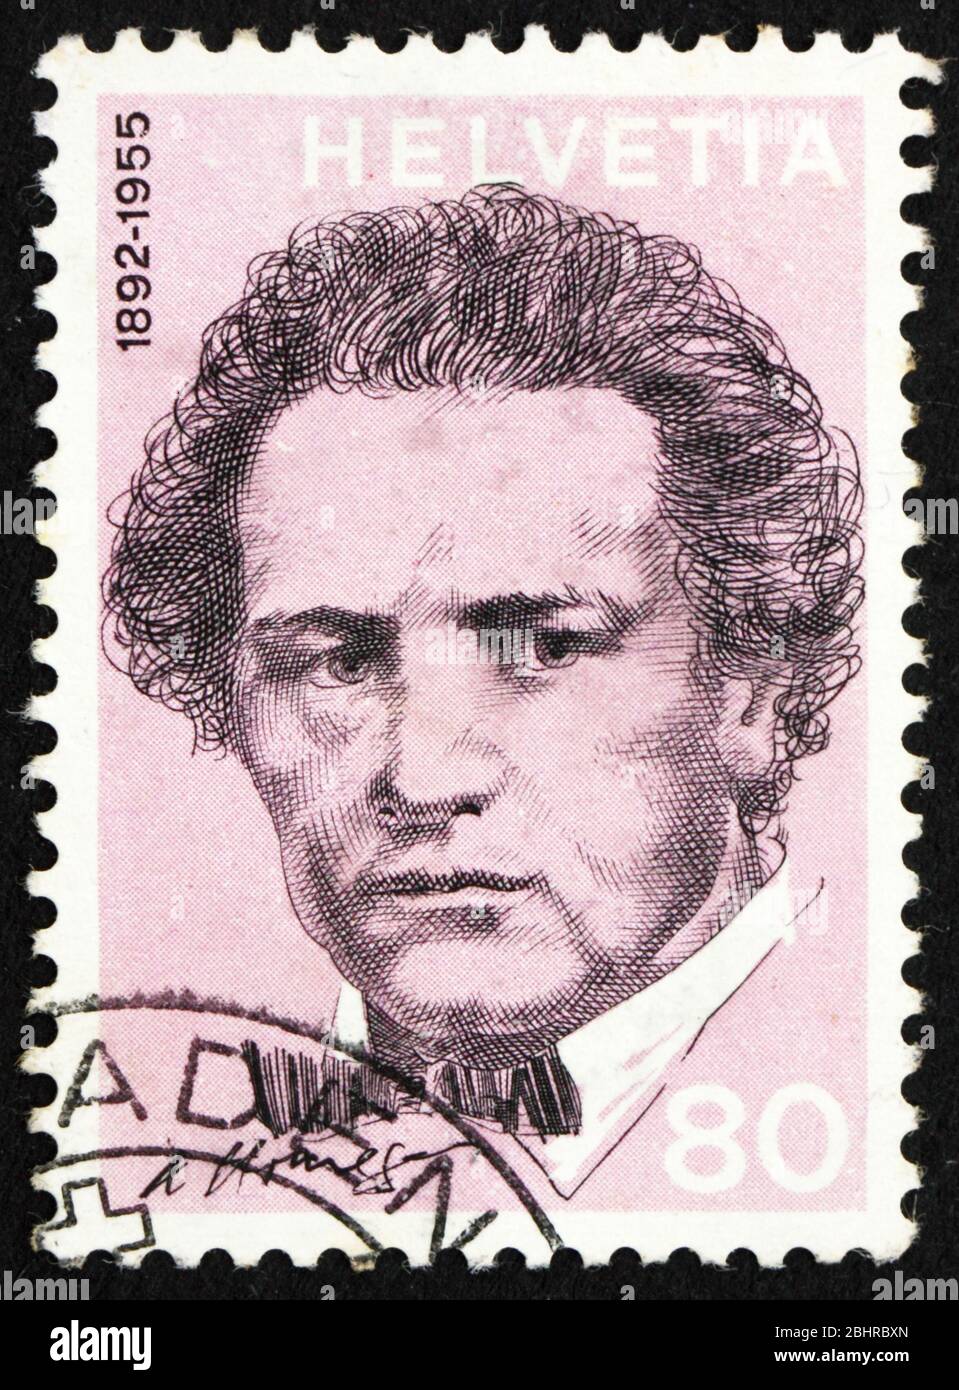 SVIZZERA - CIRCA 1972: Un francobollo stampato in Svizzera mostra Arthur Honegger, Compositore, circa 1972 Foto Stock